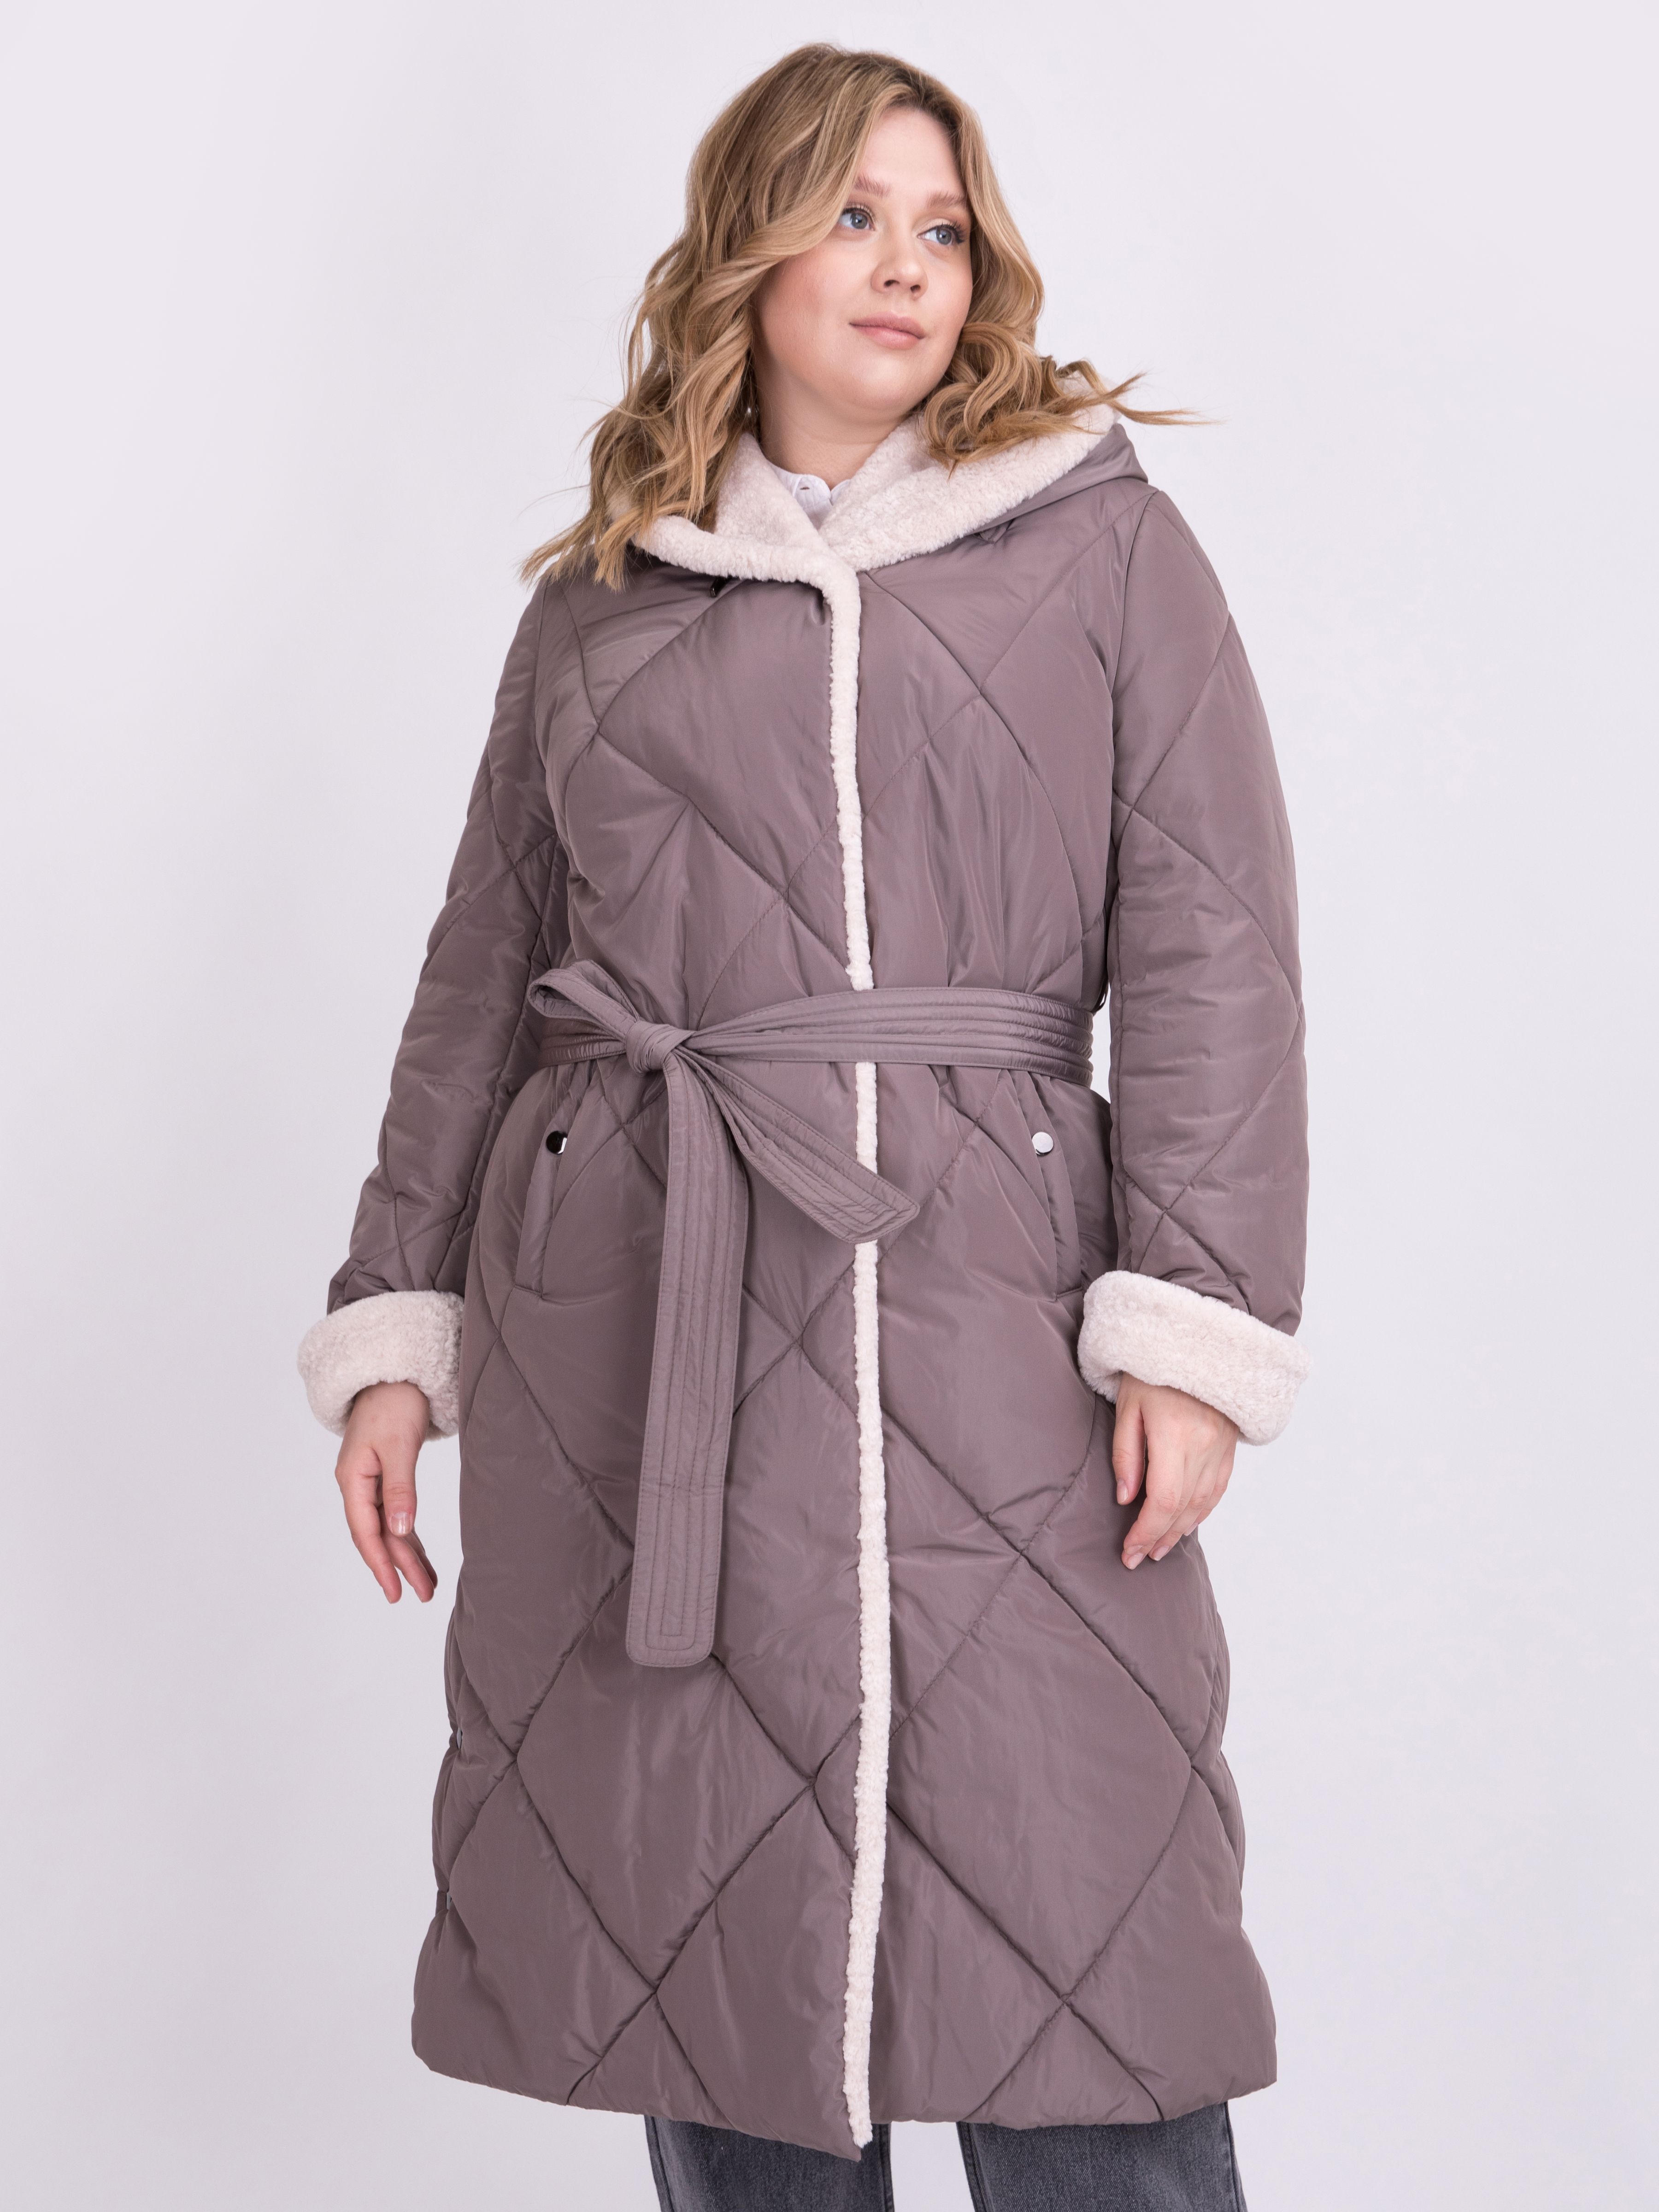 Пальто женское ElectraStyle 5У-0209/1-112/3181 коричневое 50 RU